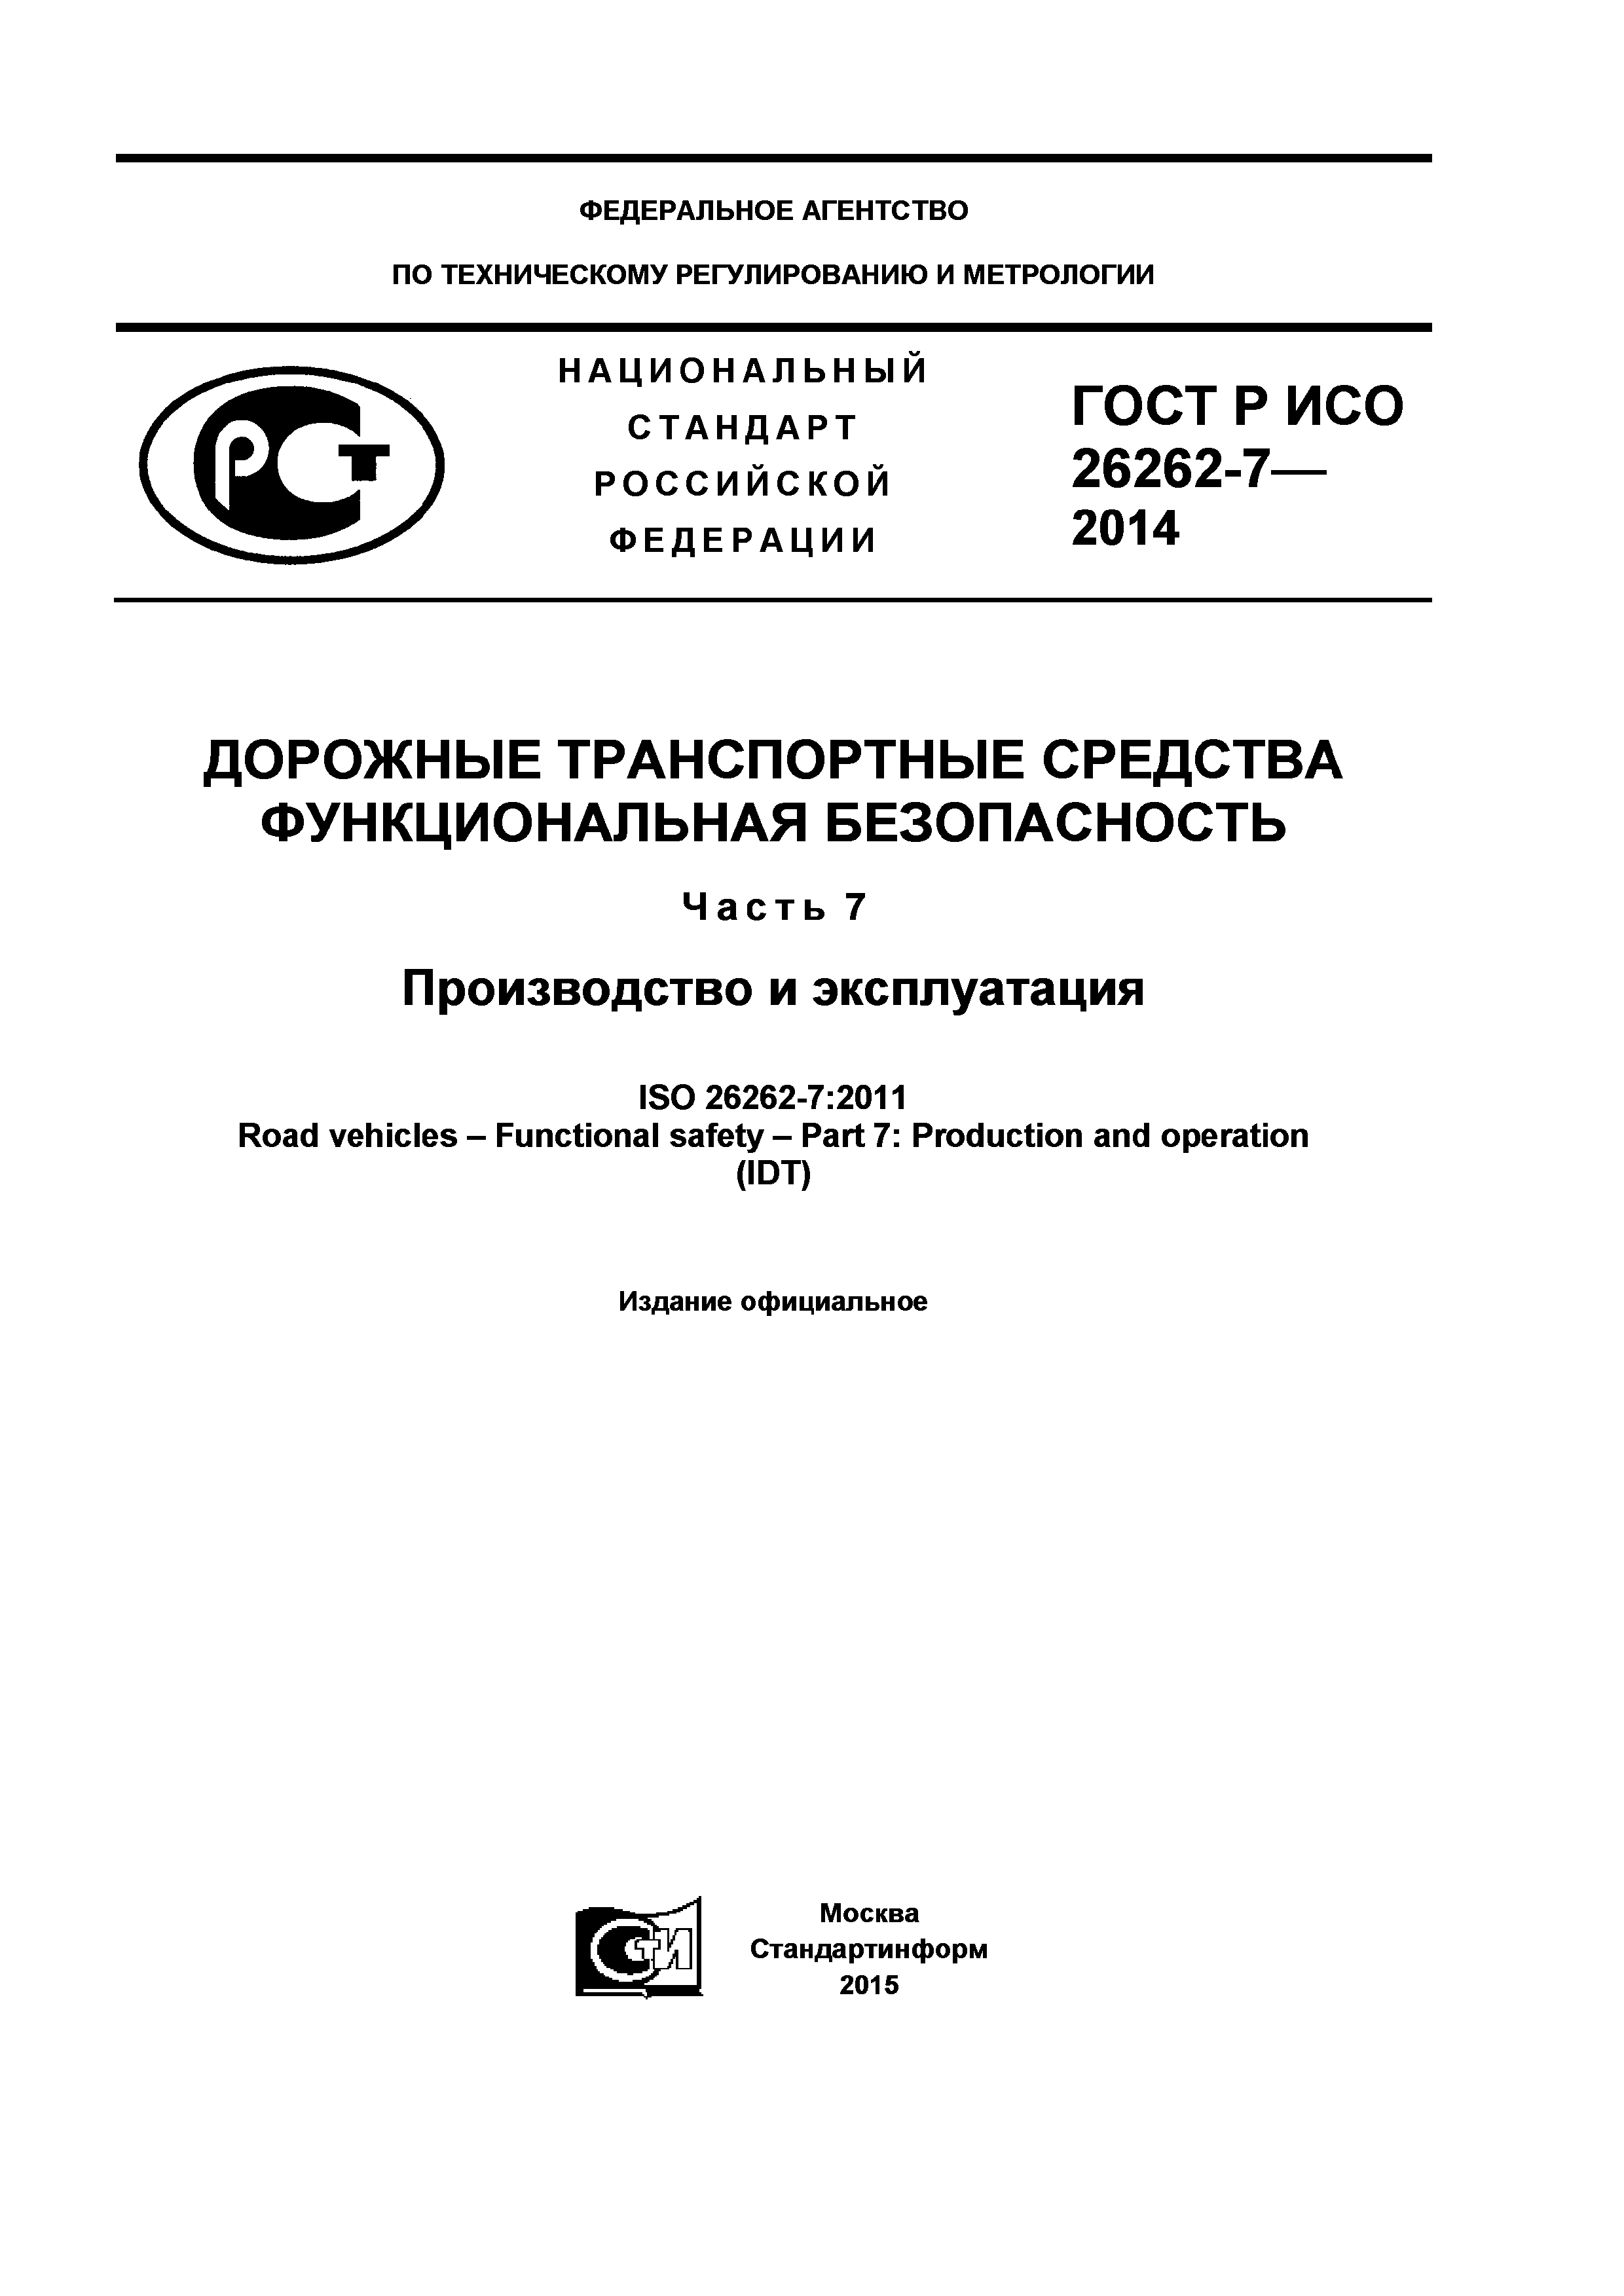 ГОСТ Р ИСО 26262-7-2014